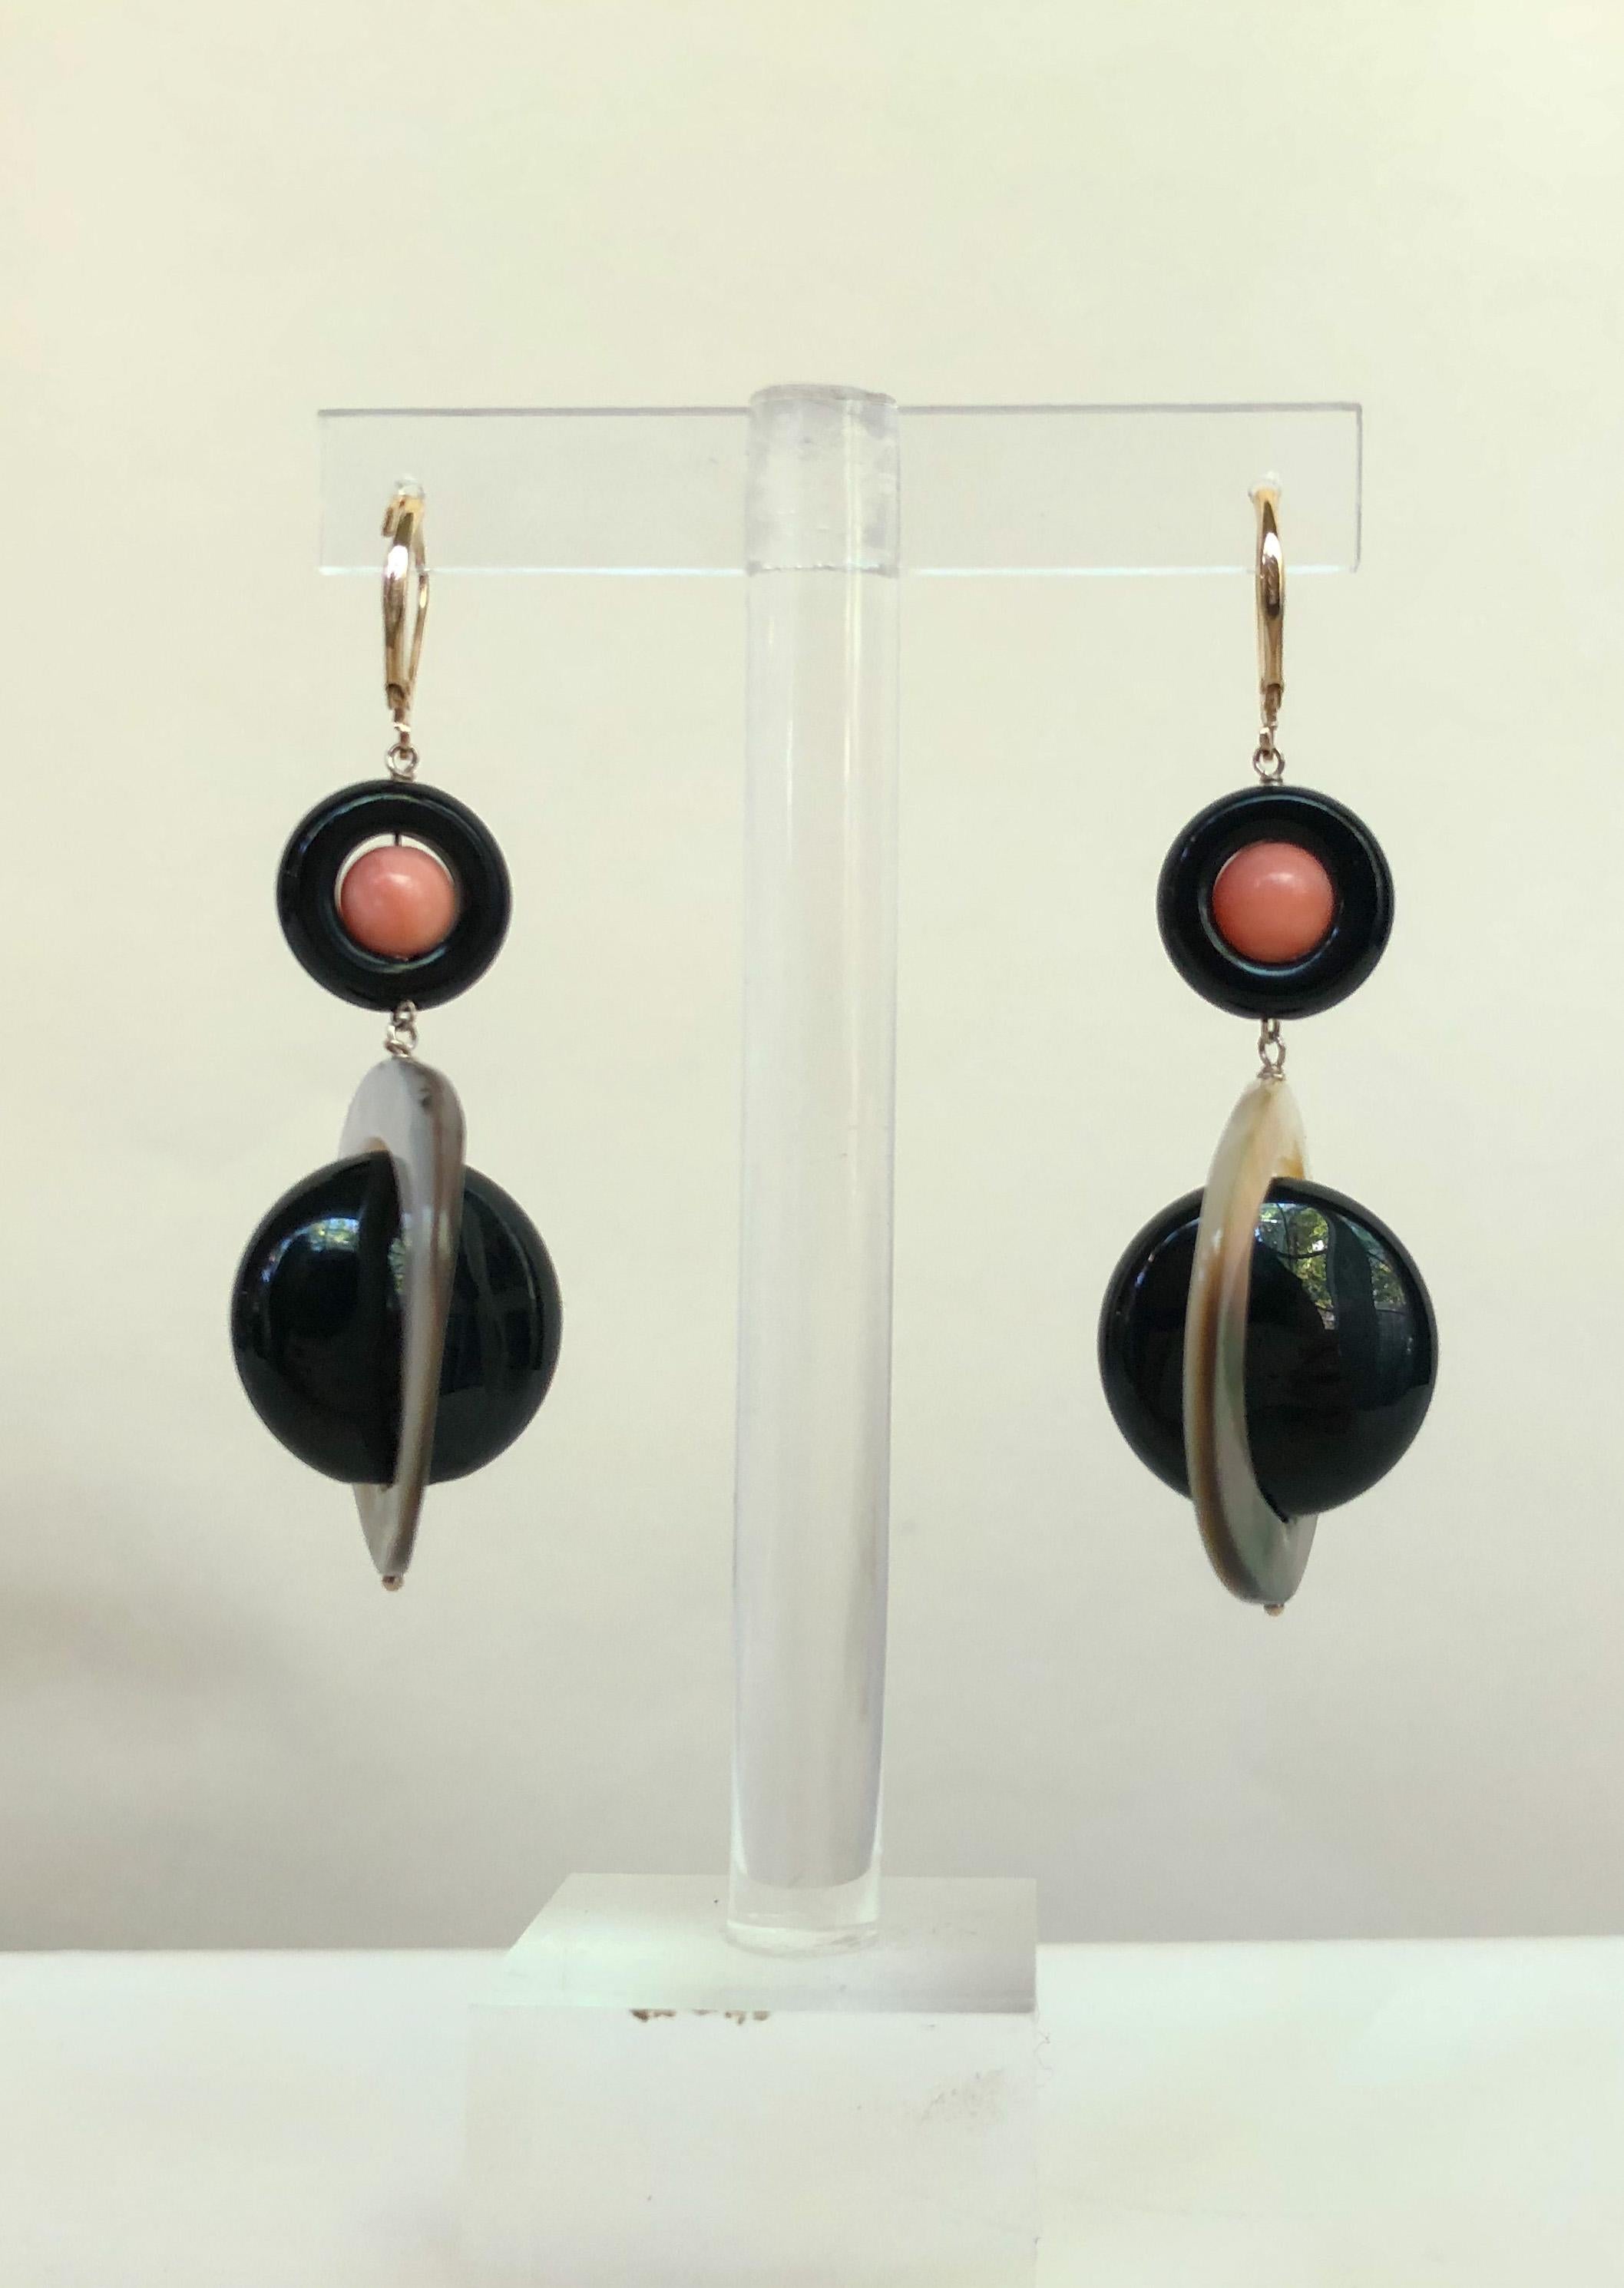 Ces boucles d'oreilles uniques sont un ajout audacieux à la collection de bijoux de n'importe qui. L'onyx noir offre un contraste saisissant entre la perle de corail rose et l'anneau de nacre. Les boucles d'oreilles mesurent environ 2 pouces de